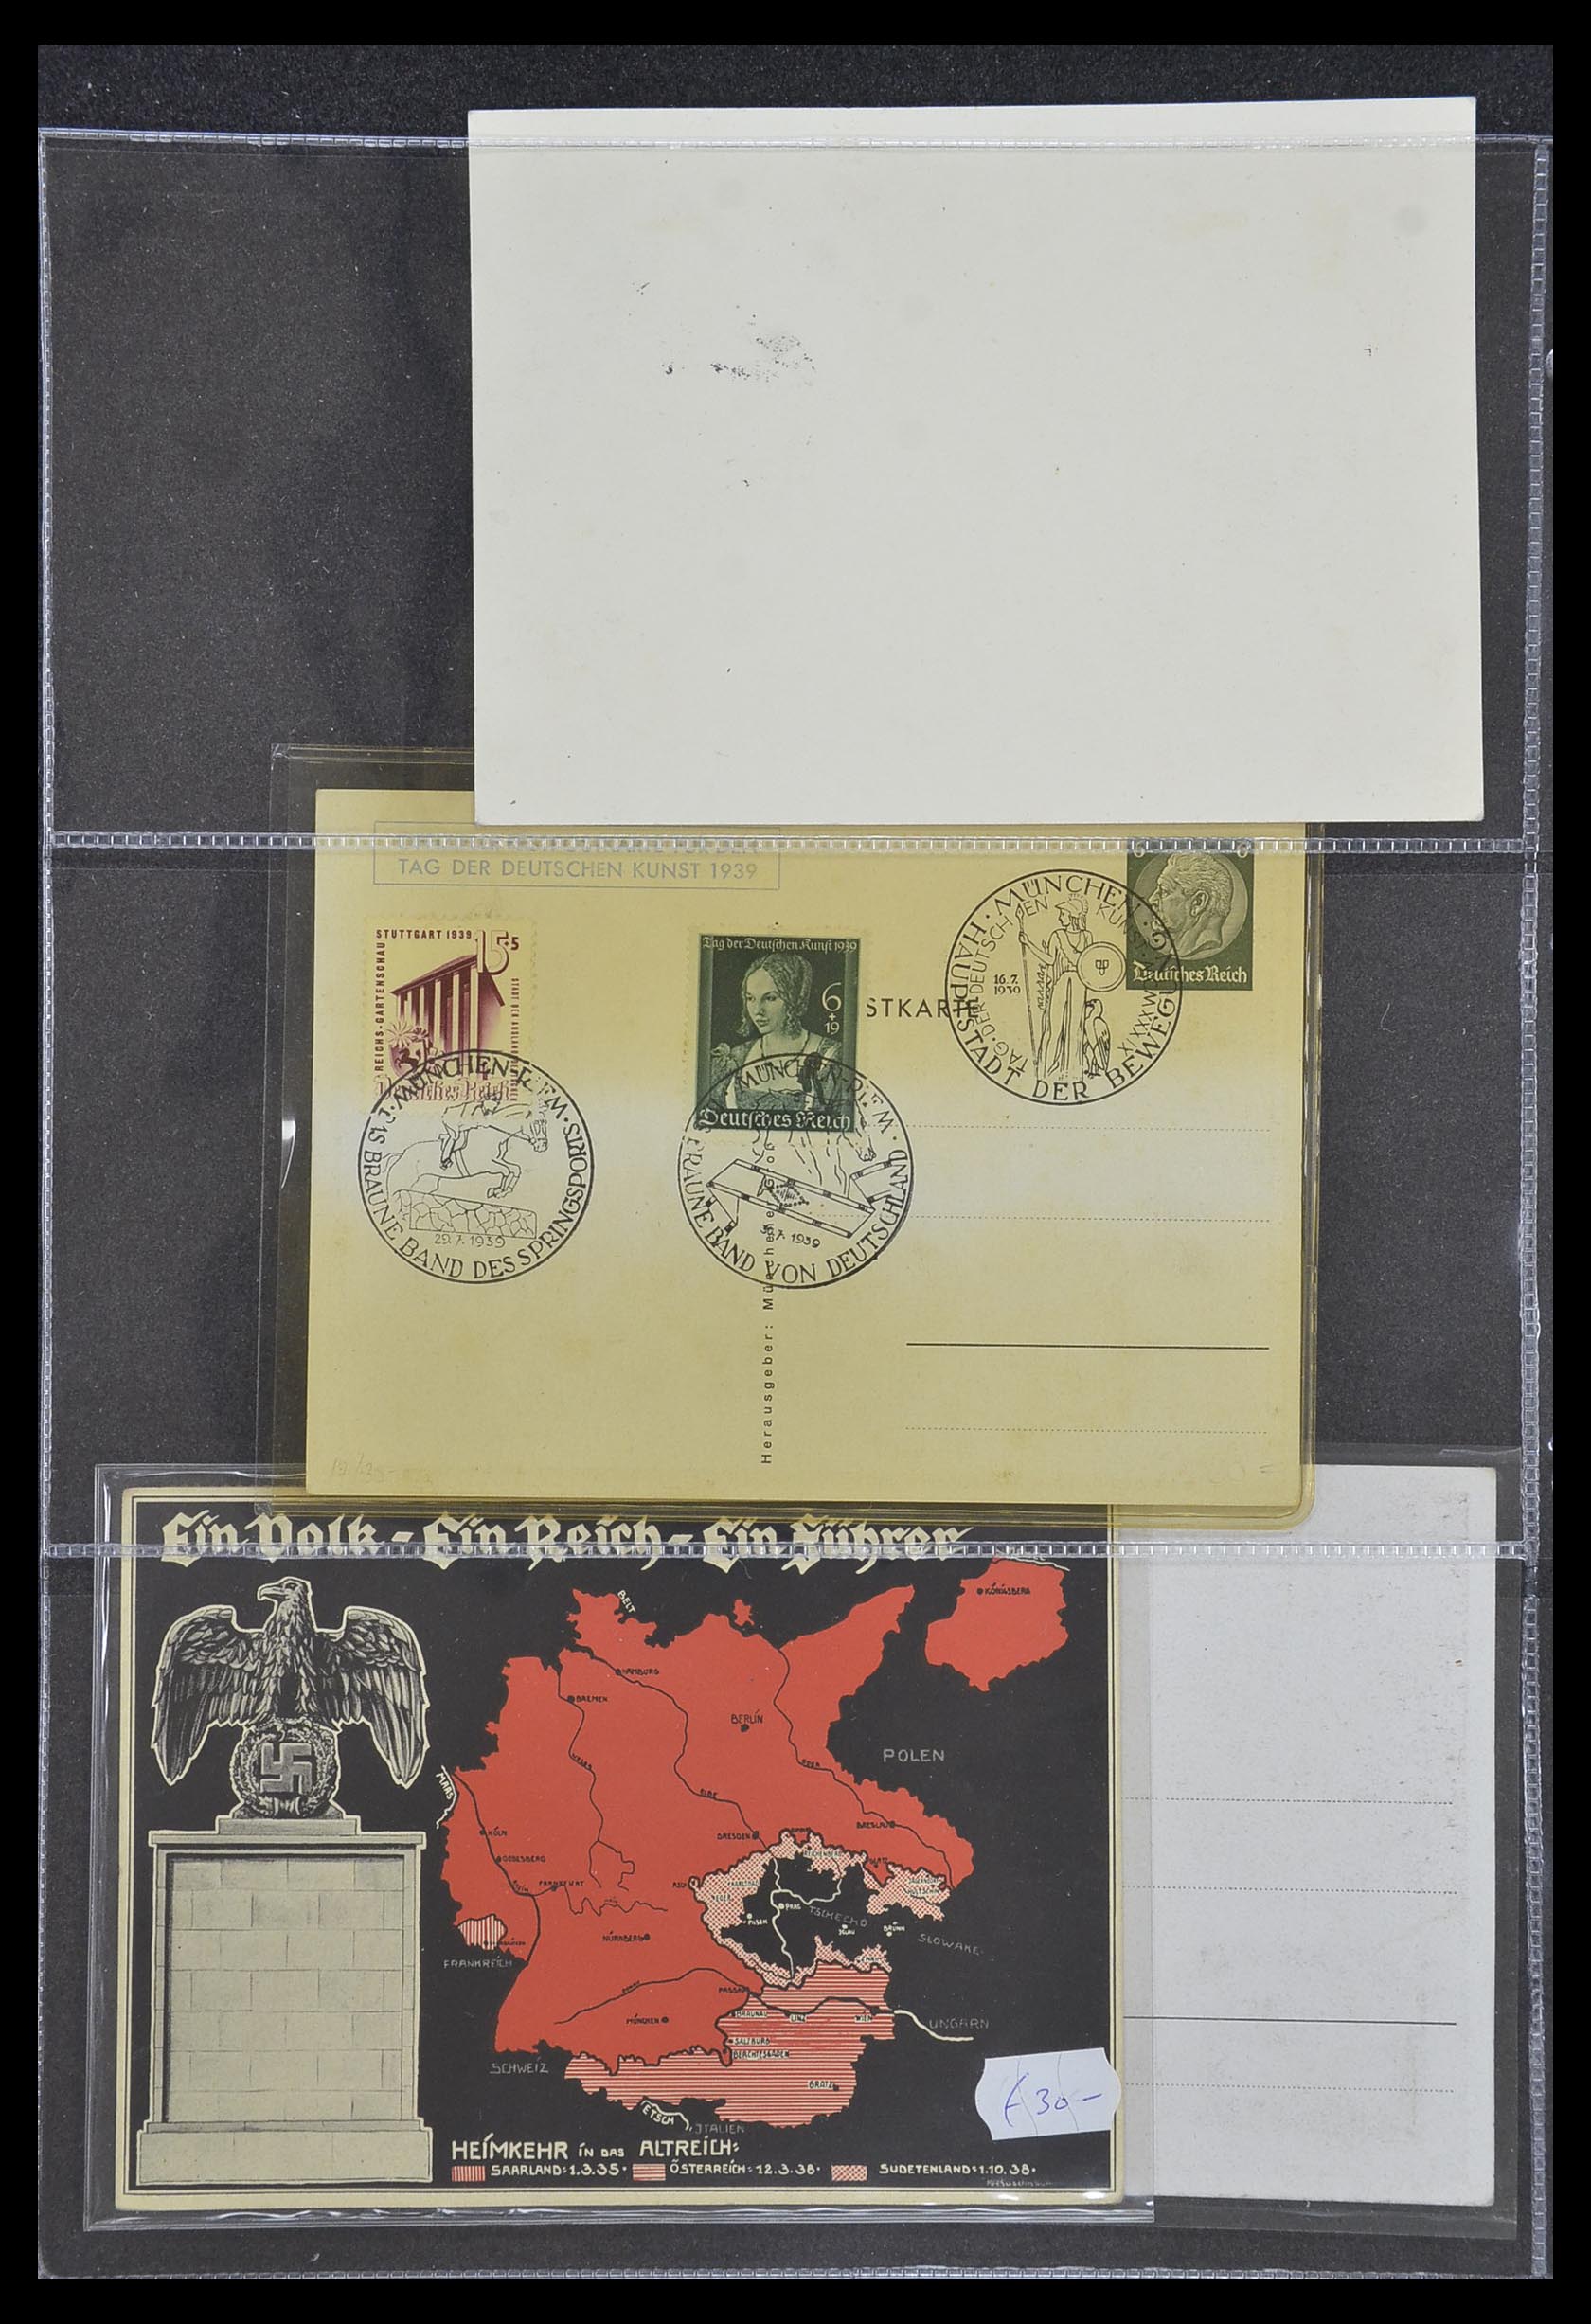 33995 036 - Postzegelverzameling 33995 Duitsland propaganda kaarten.